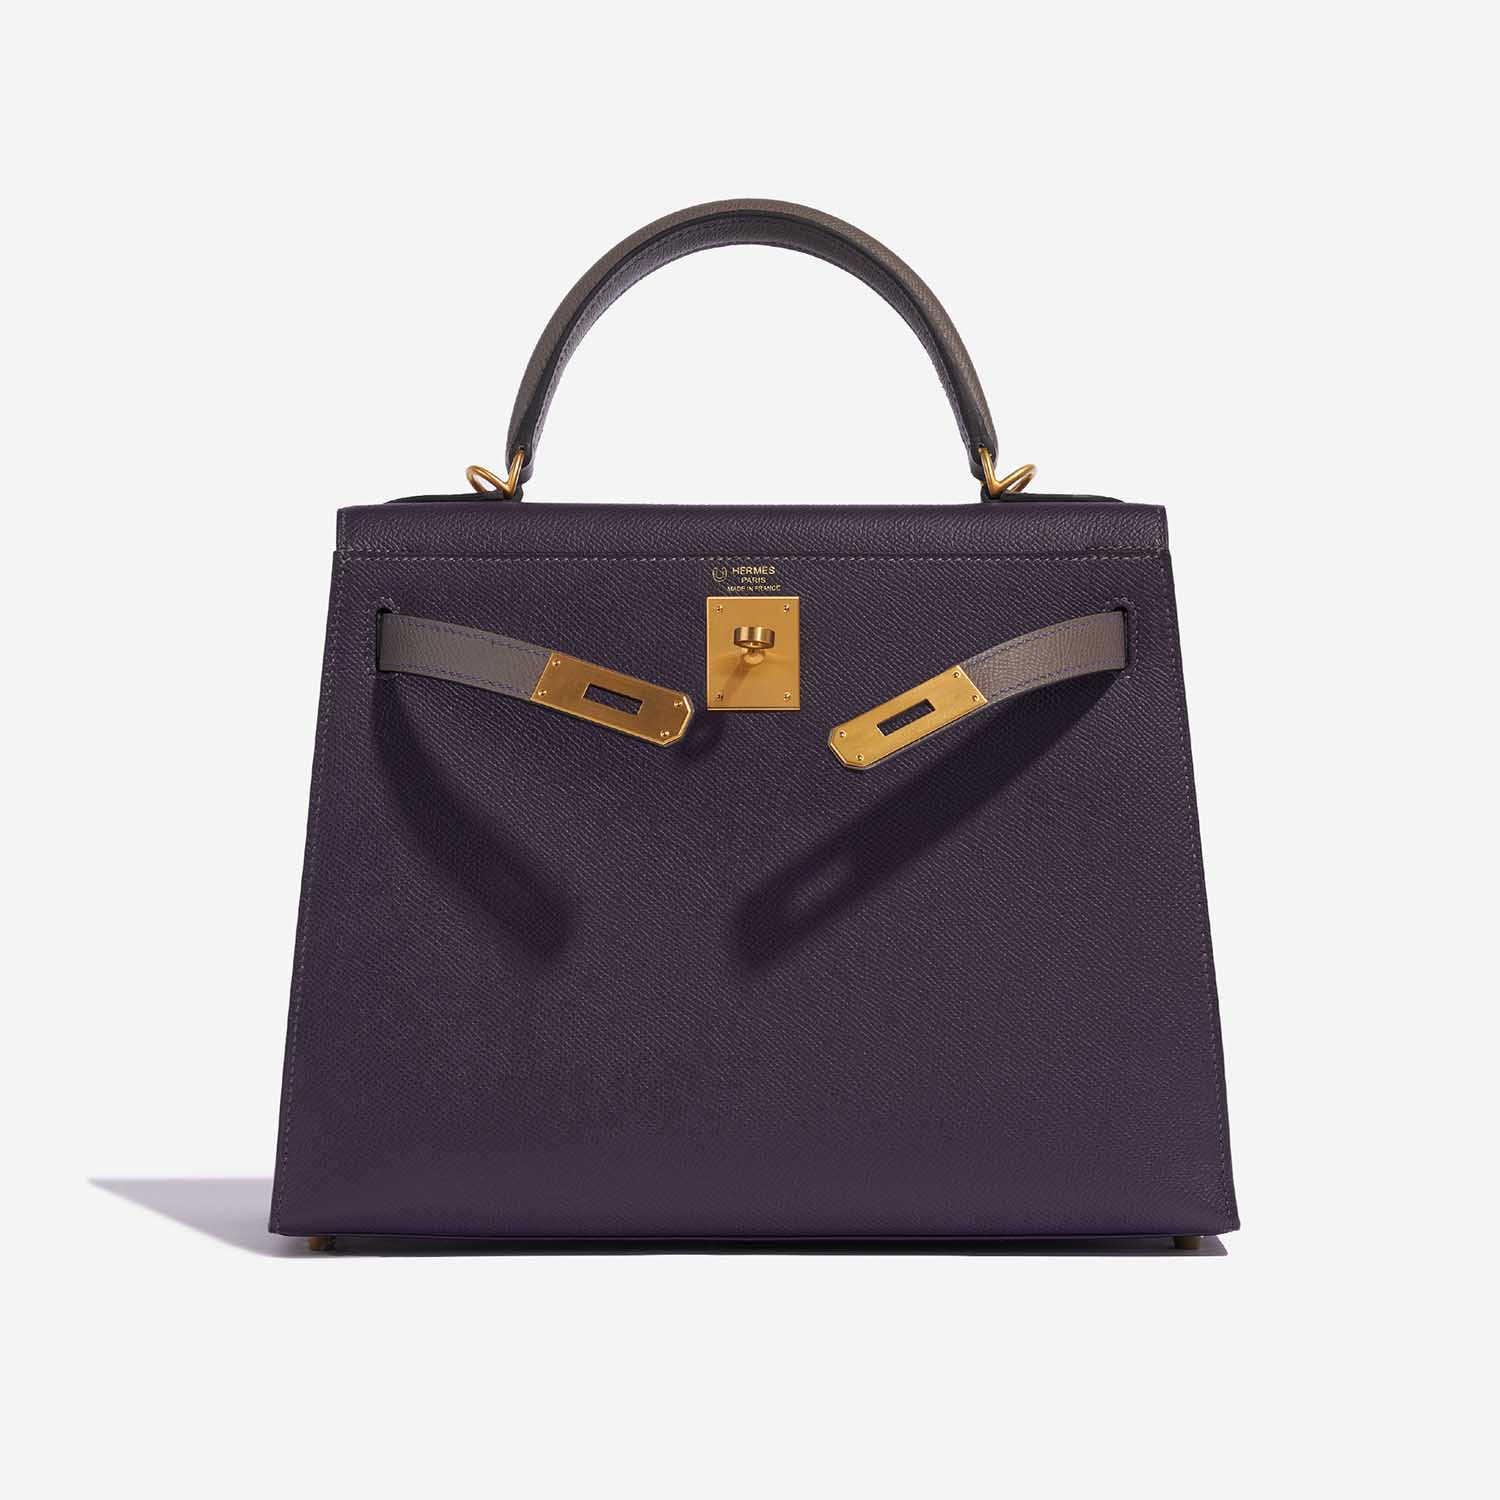 Pre-owned Hermès Tasche Kelly HSS 28 Epsom Raisin / Gris Etain Grey Front Open | Verkaufen Sie Ihre Designer-Tasche auf Saclab.com